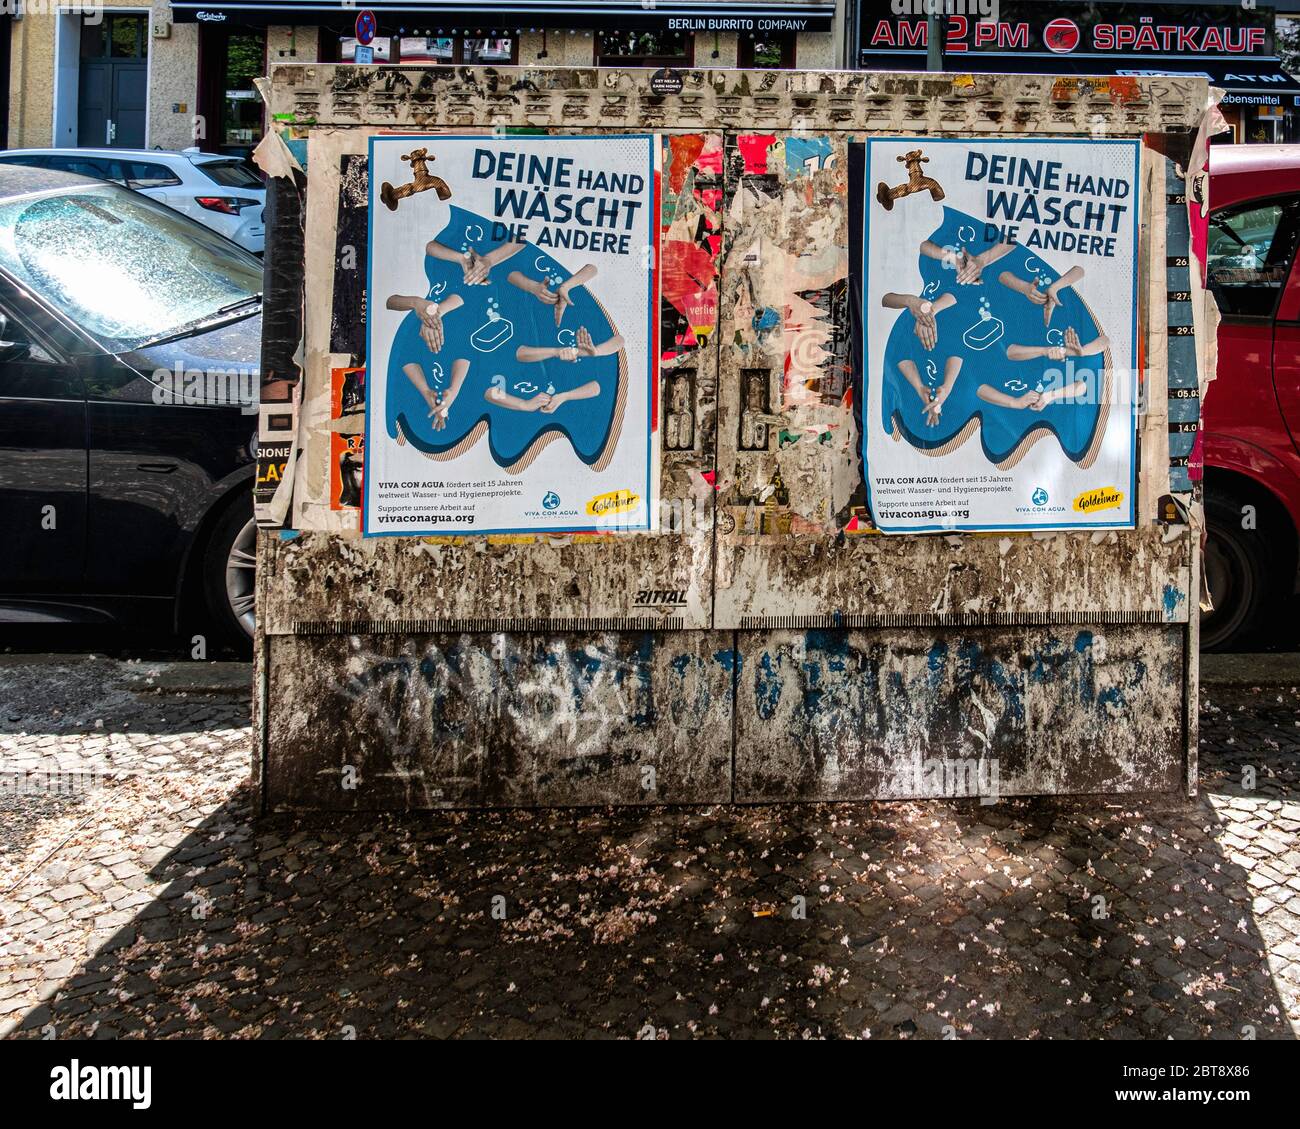 Berlin, Mitte. Viva con Agua de Sankt Pauli la publicité de la Charité vise à améliorer l'approvisionnement en eau potable dans les pays en développement Banque D'Images